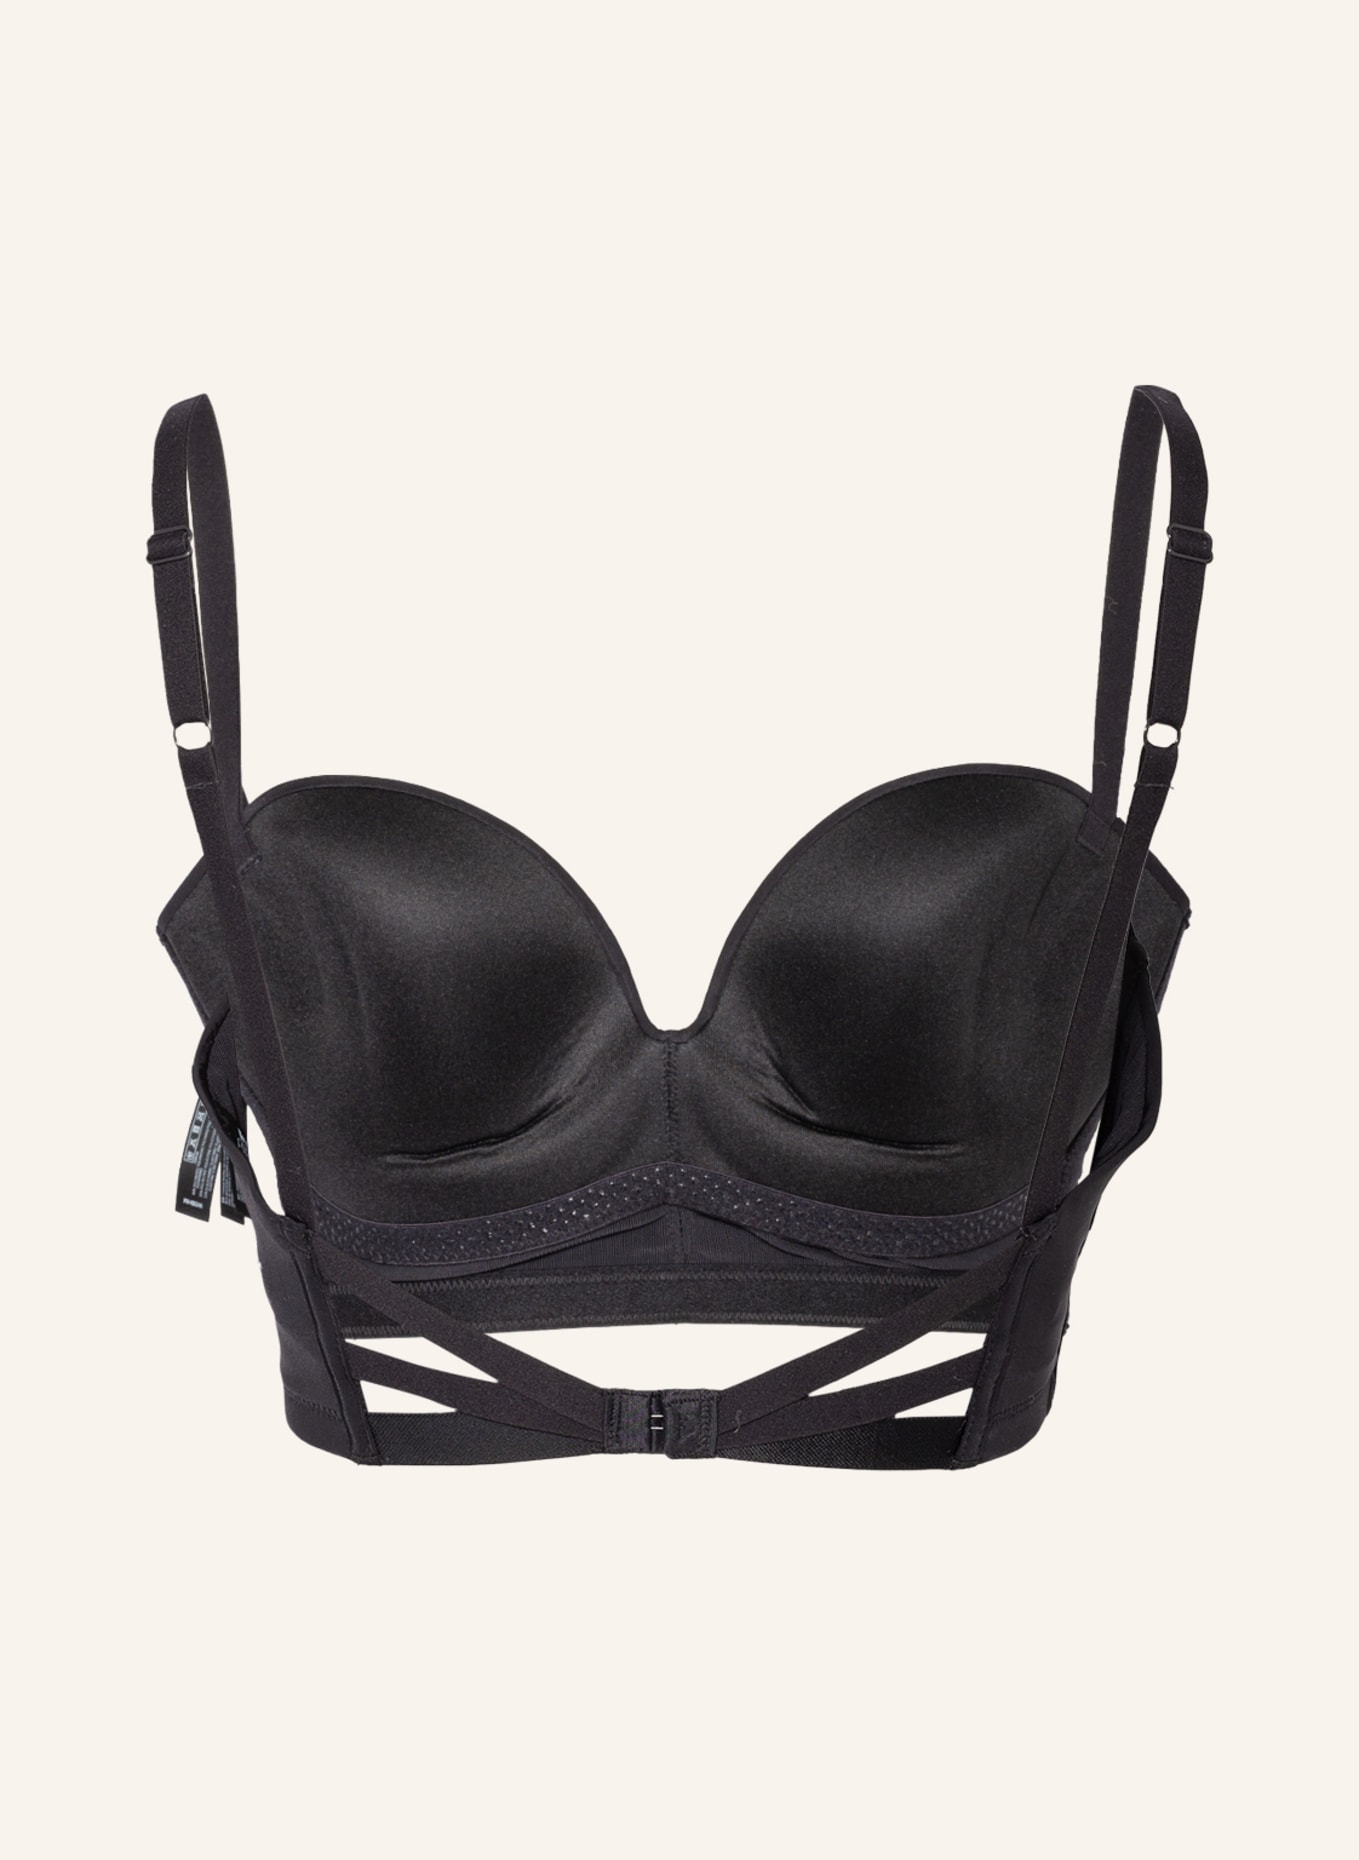 wonderbra Push-up bra ULTIMATE BACKLESS, Color: BLACK (Image 2)